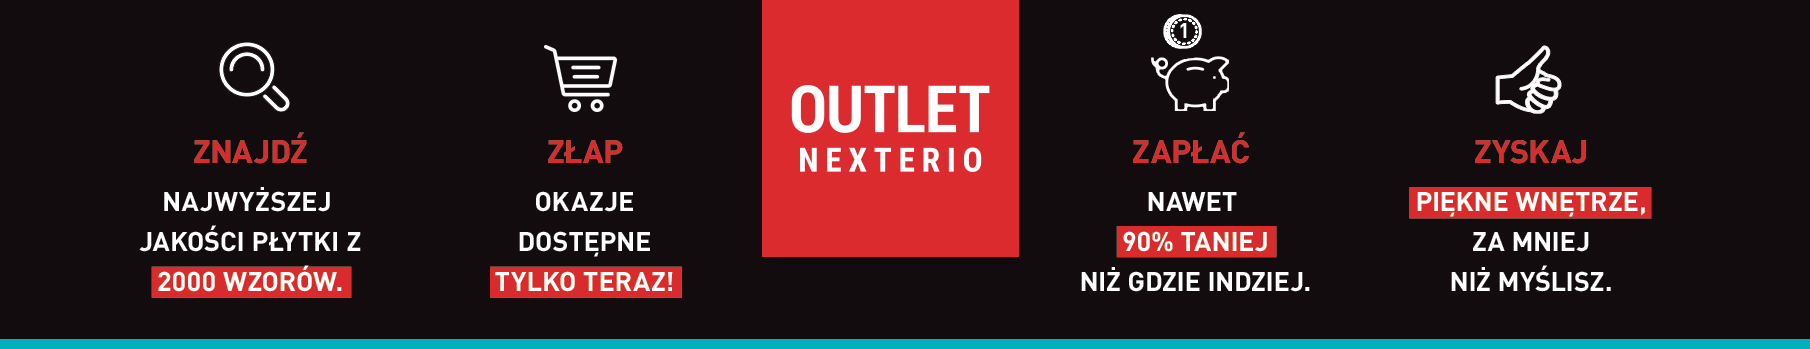 Outlet Nexterio Katowice